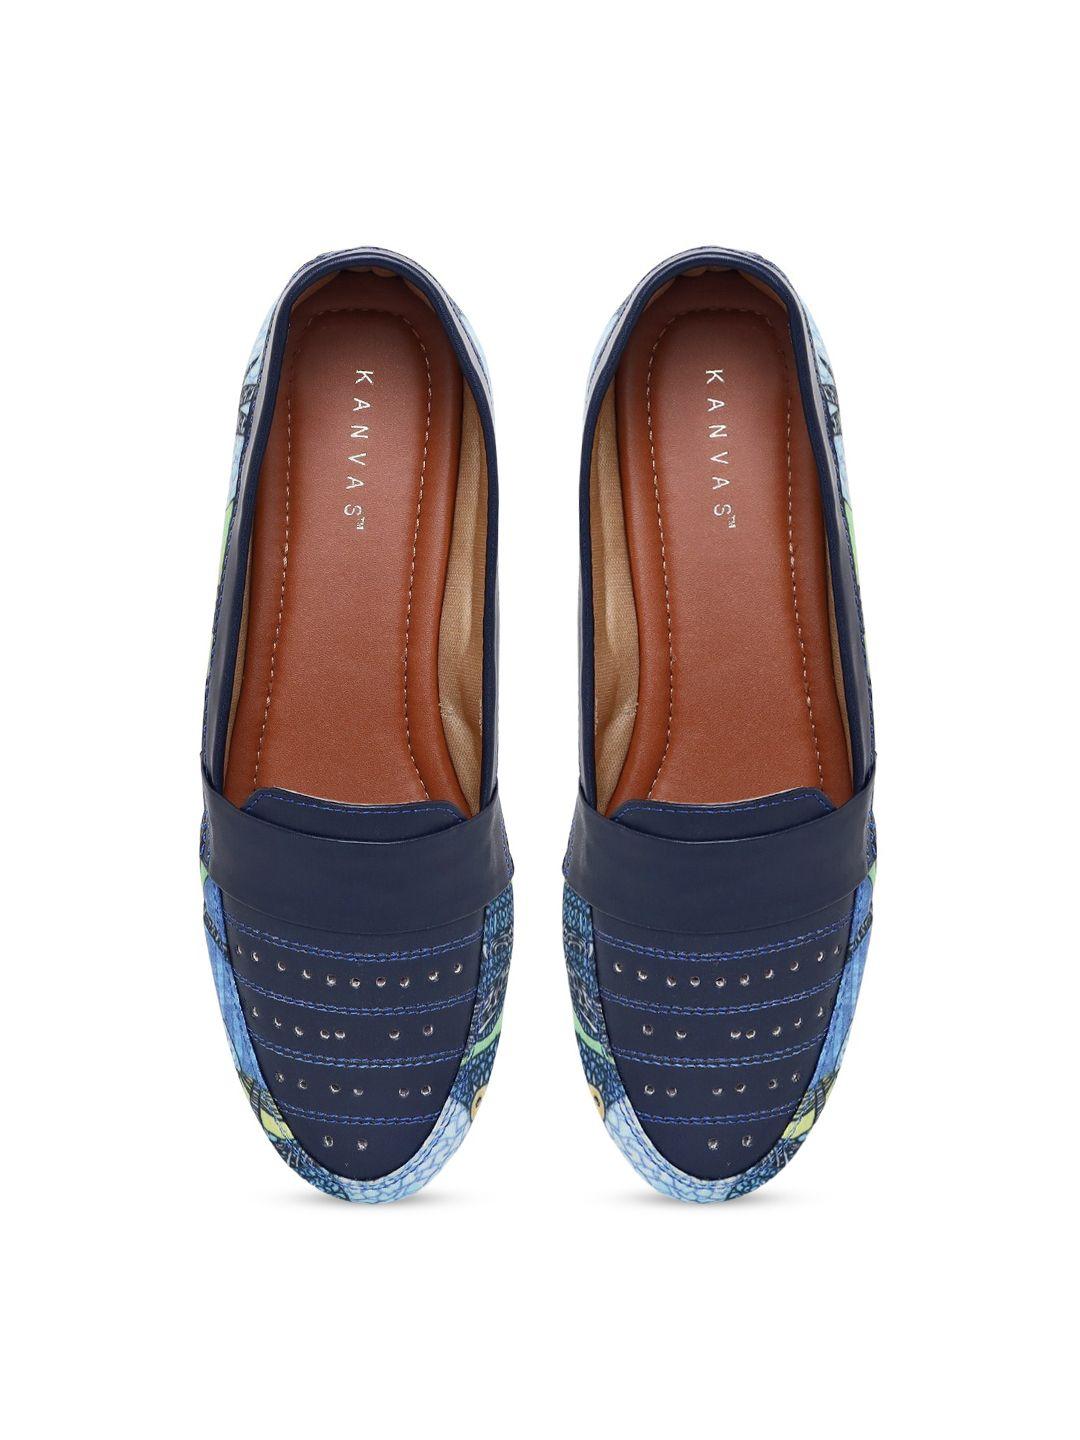 kanvas-women-blue-printed-slip-on-sneakers